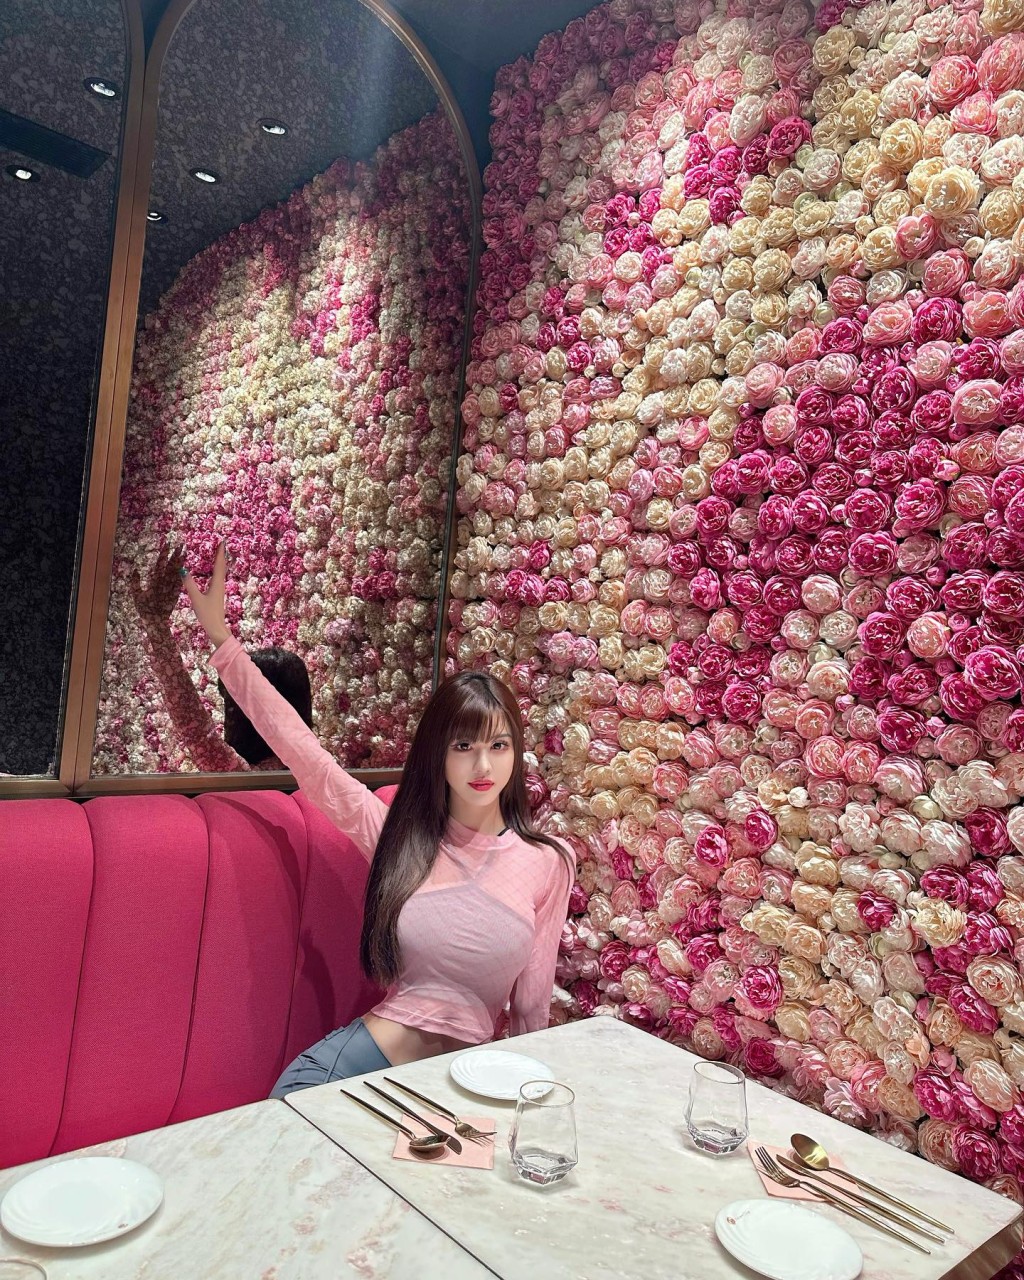 Yumi特意分享在餐厅的照片，证明自己没有刻意不吃东西。